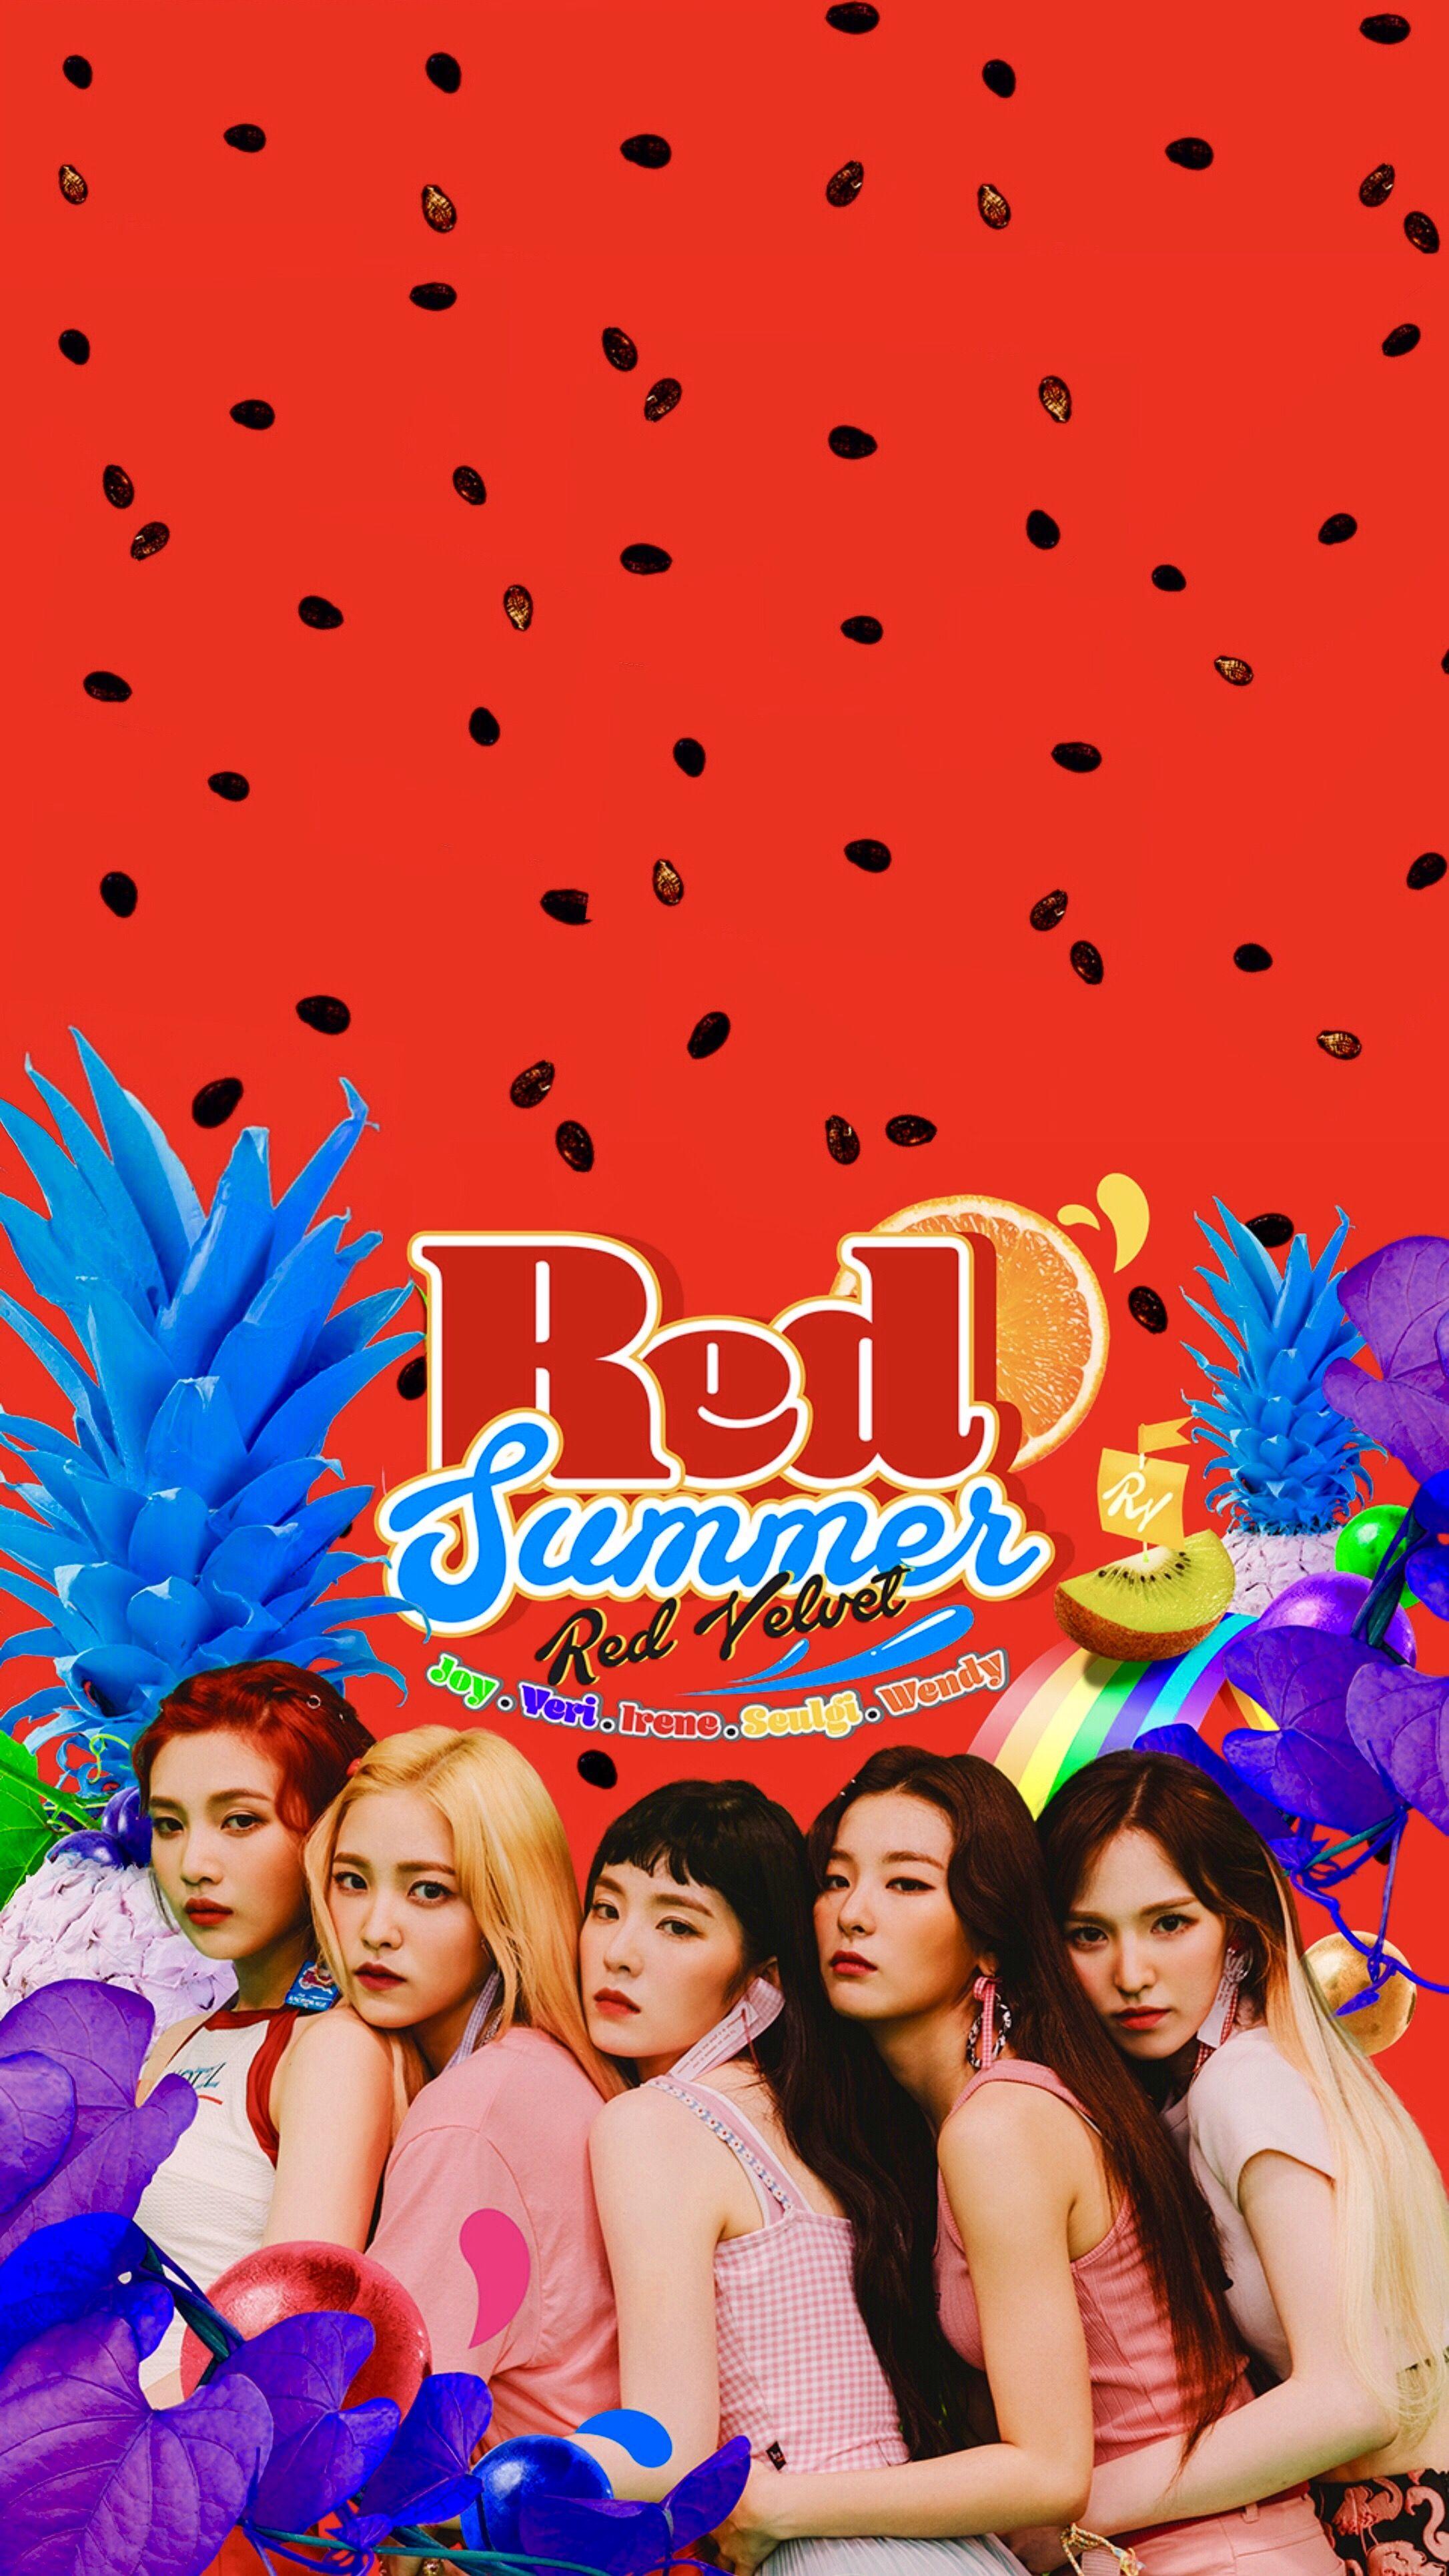 Red Velvet Phone Wallpapers